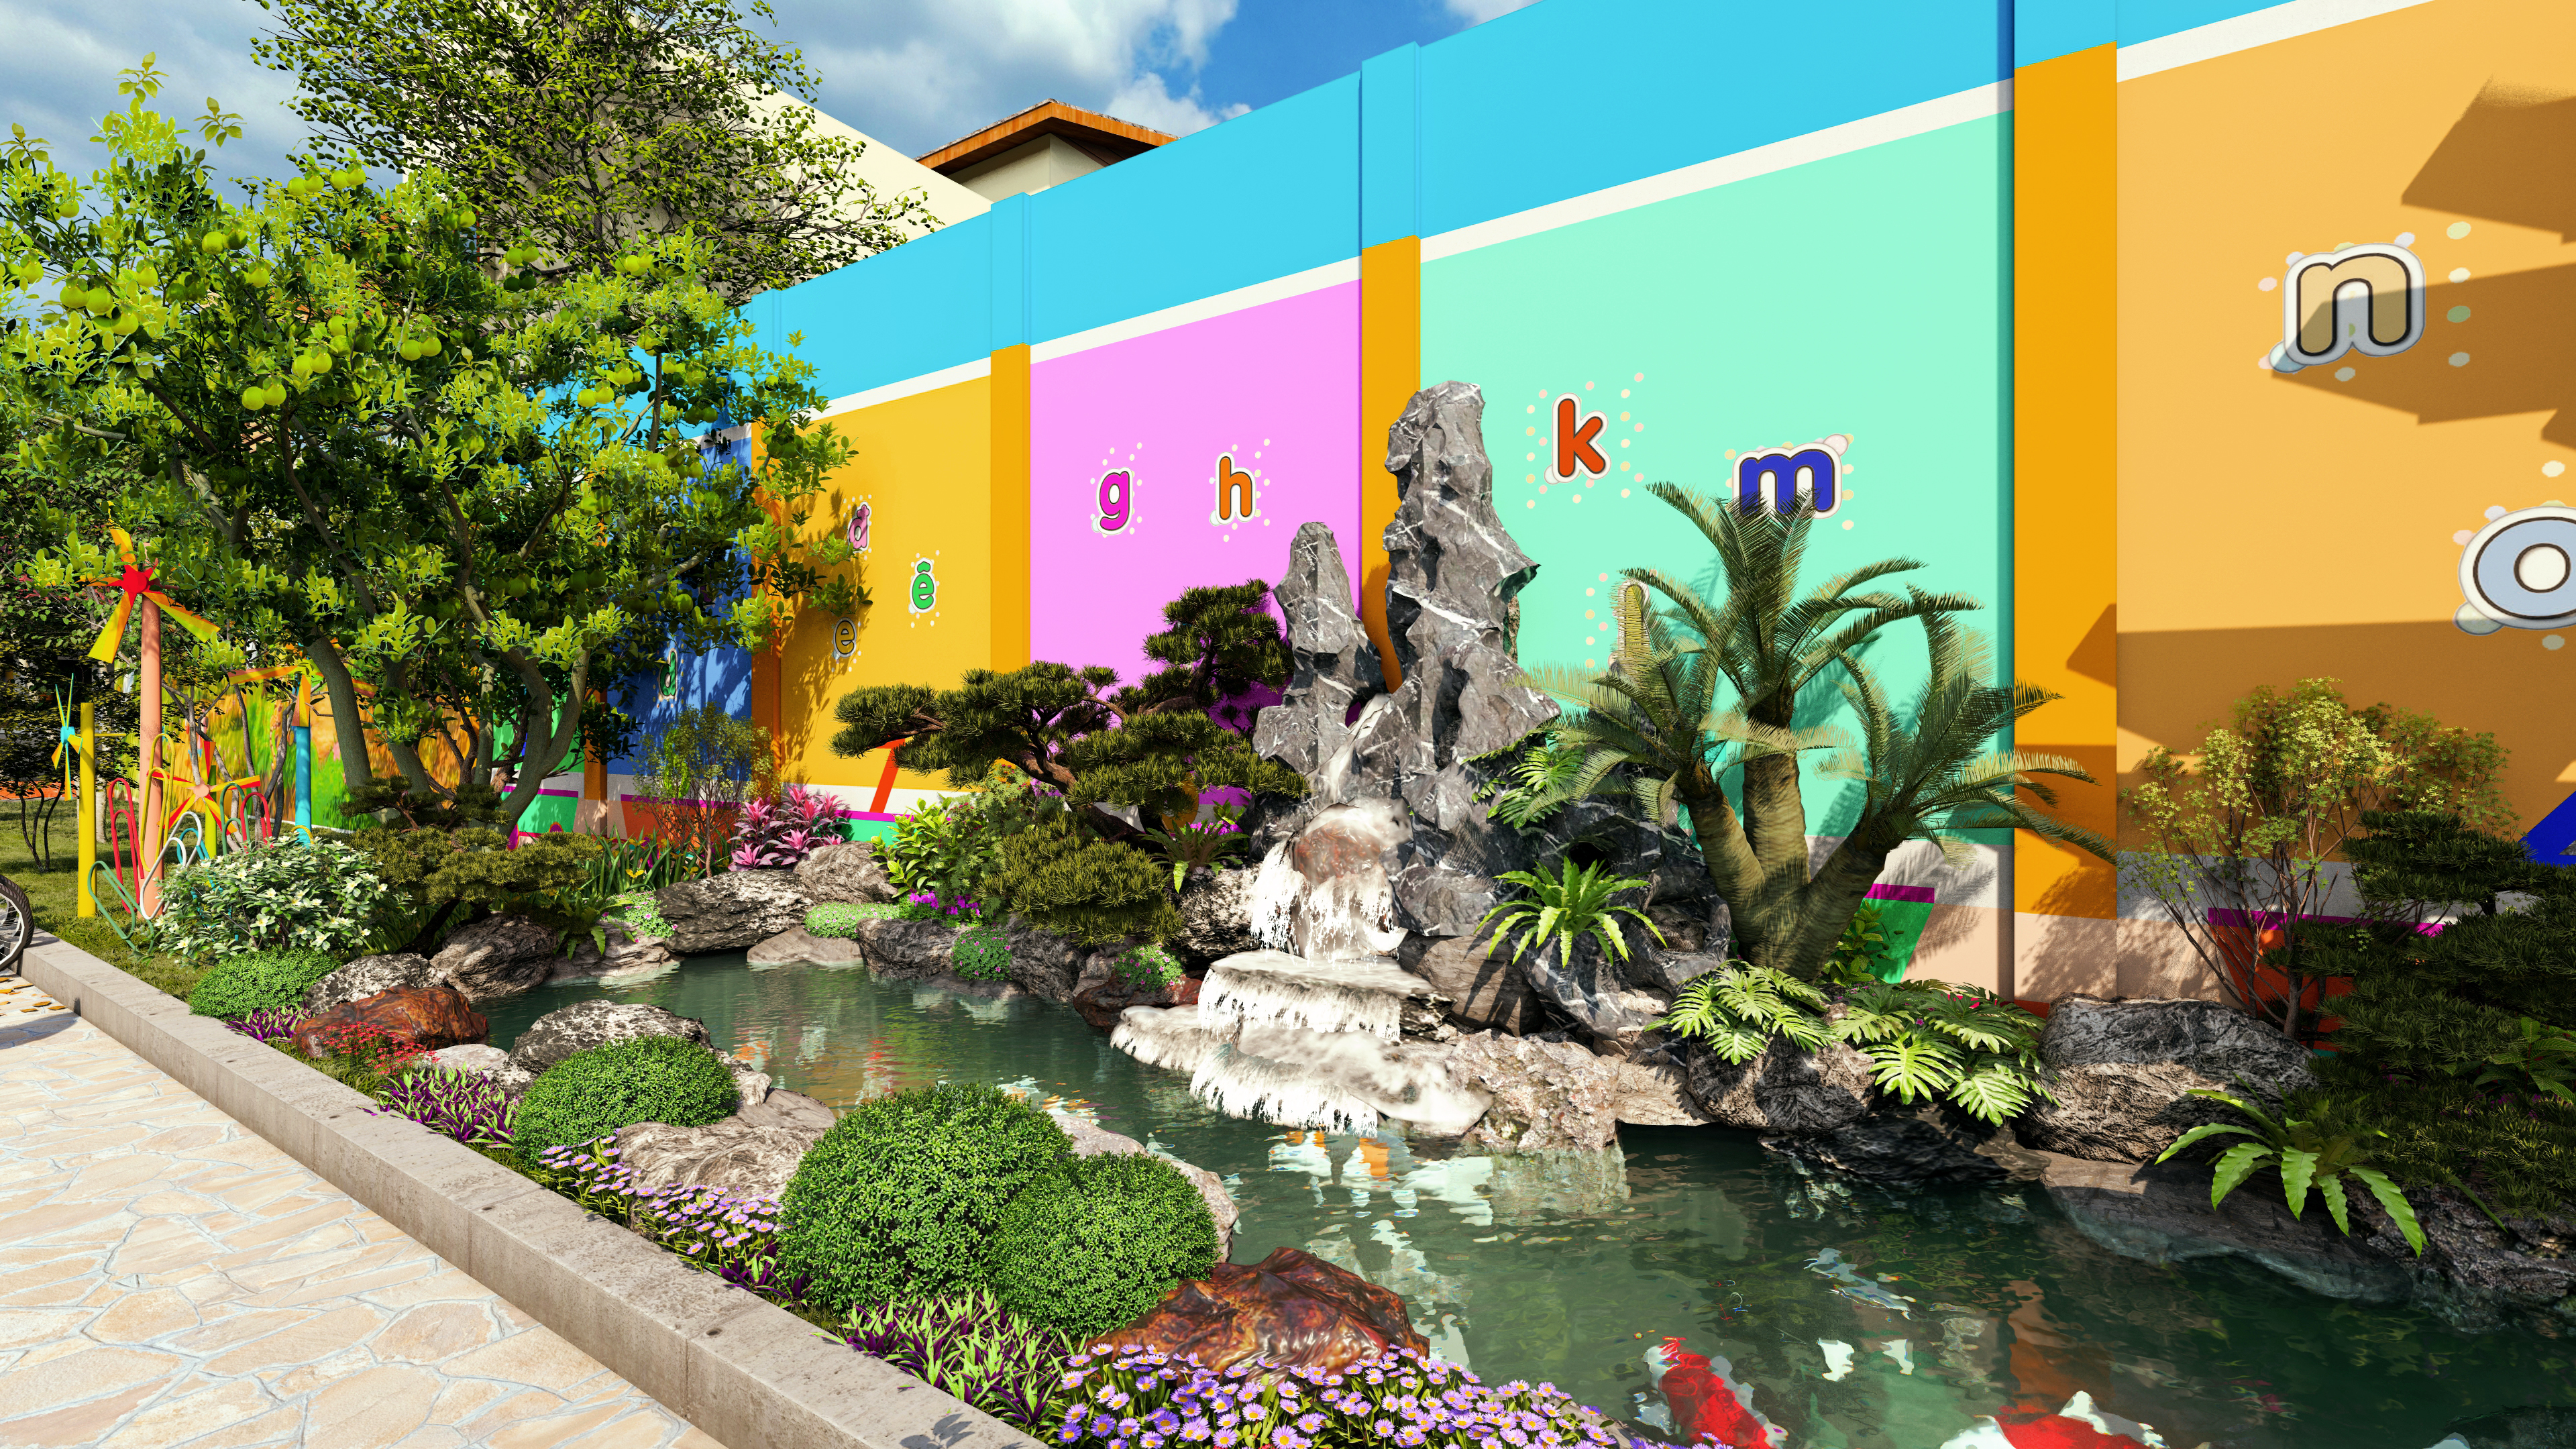 Thiết kế Công Trình Công Cộng tại Đắk Lắk Thiết kế cảnh quan hồ cá Koi trường mầm non Sài Gòn - Đắk Lắk 1635957102 4